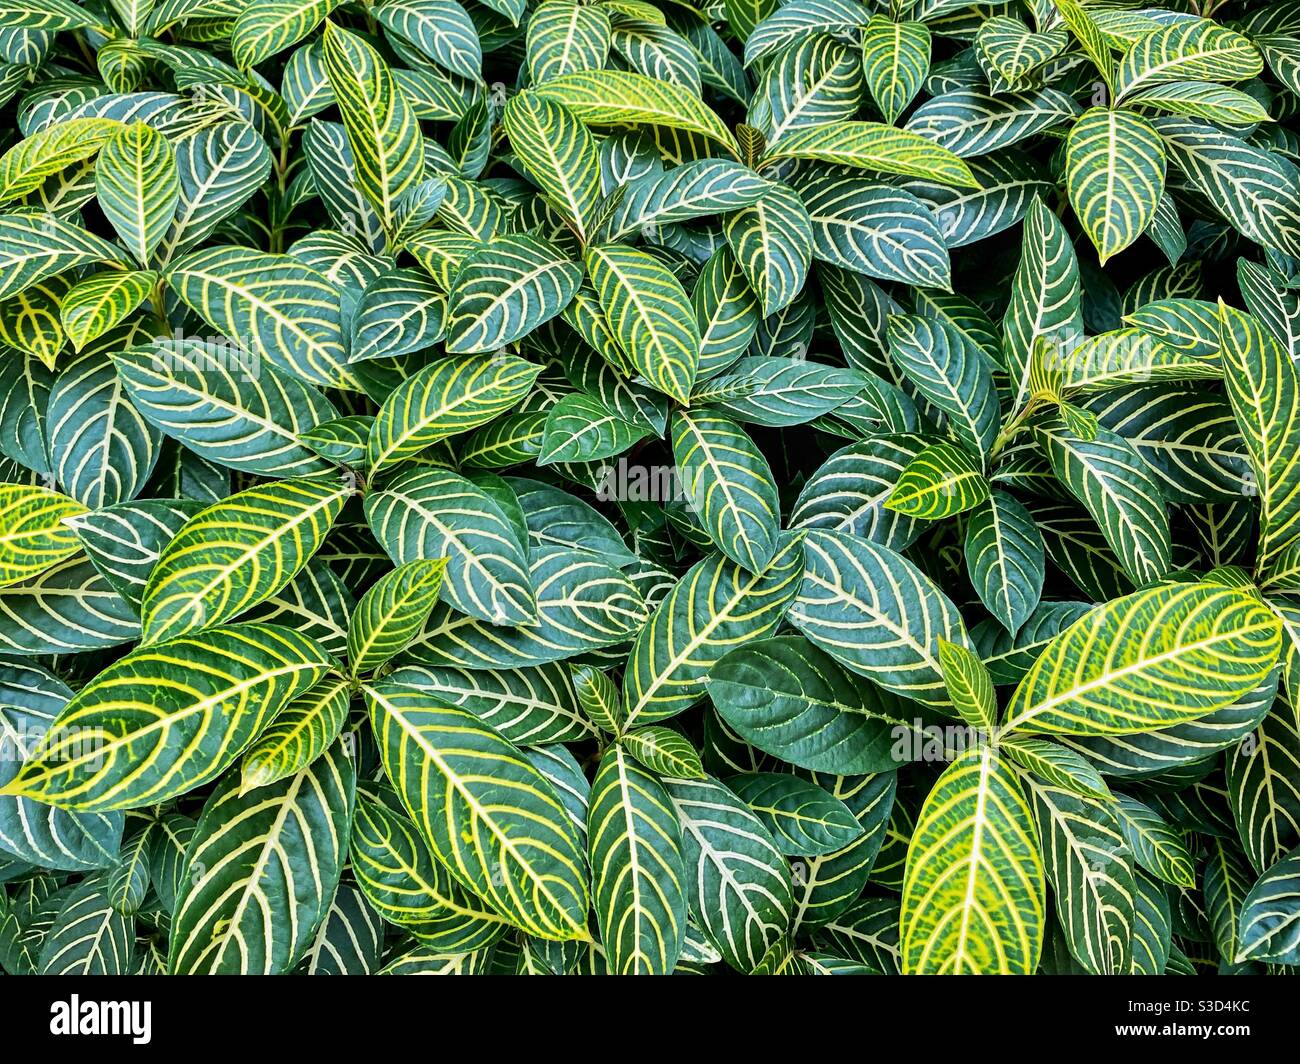 Los patrones naturales de las hojas verdes pueden ser un fondo interesante Foto de stock